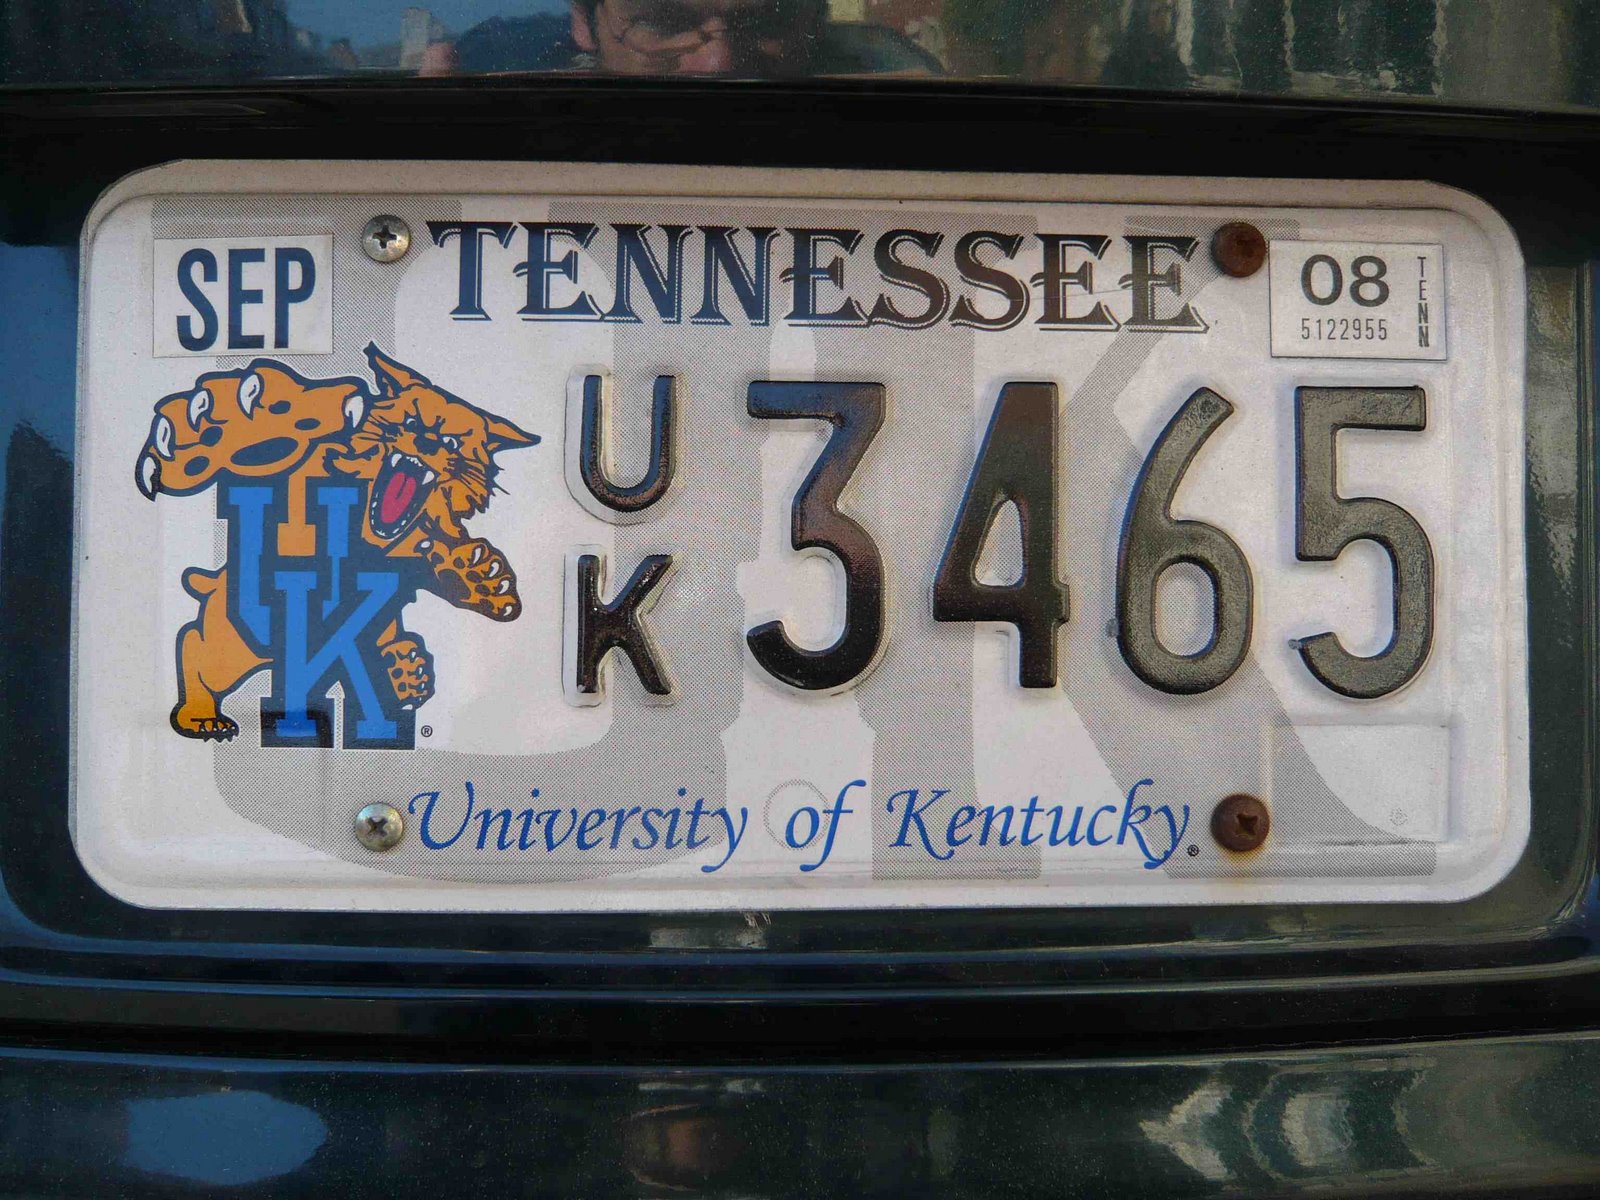 [Tennessee+univ+of+Kentucky.jpg]